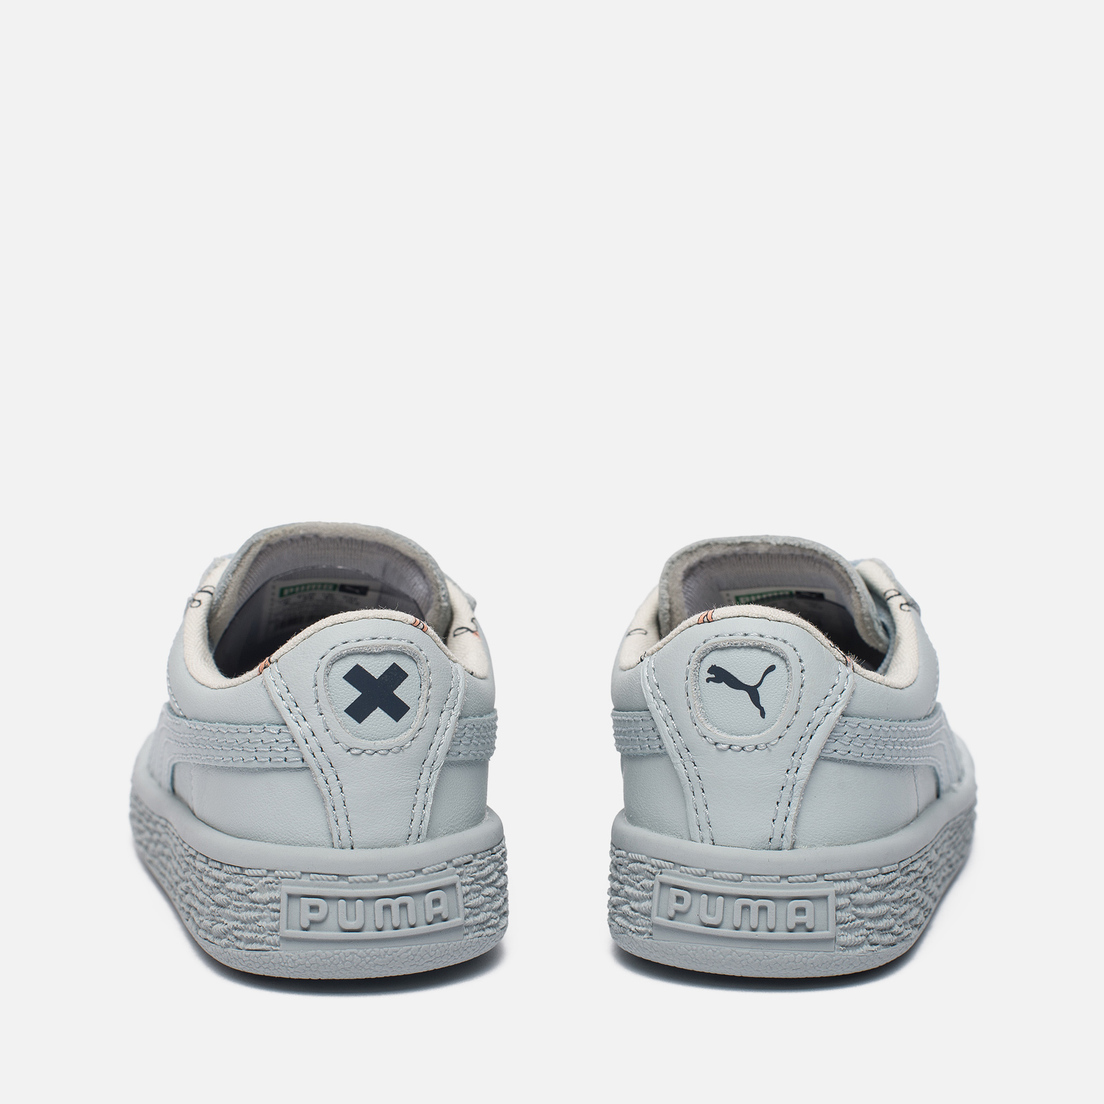 Puma Кроссовки для малышей x tinycottons Basket Leather Infant